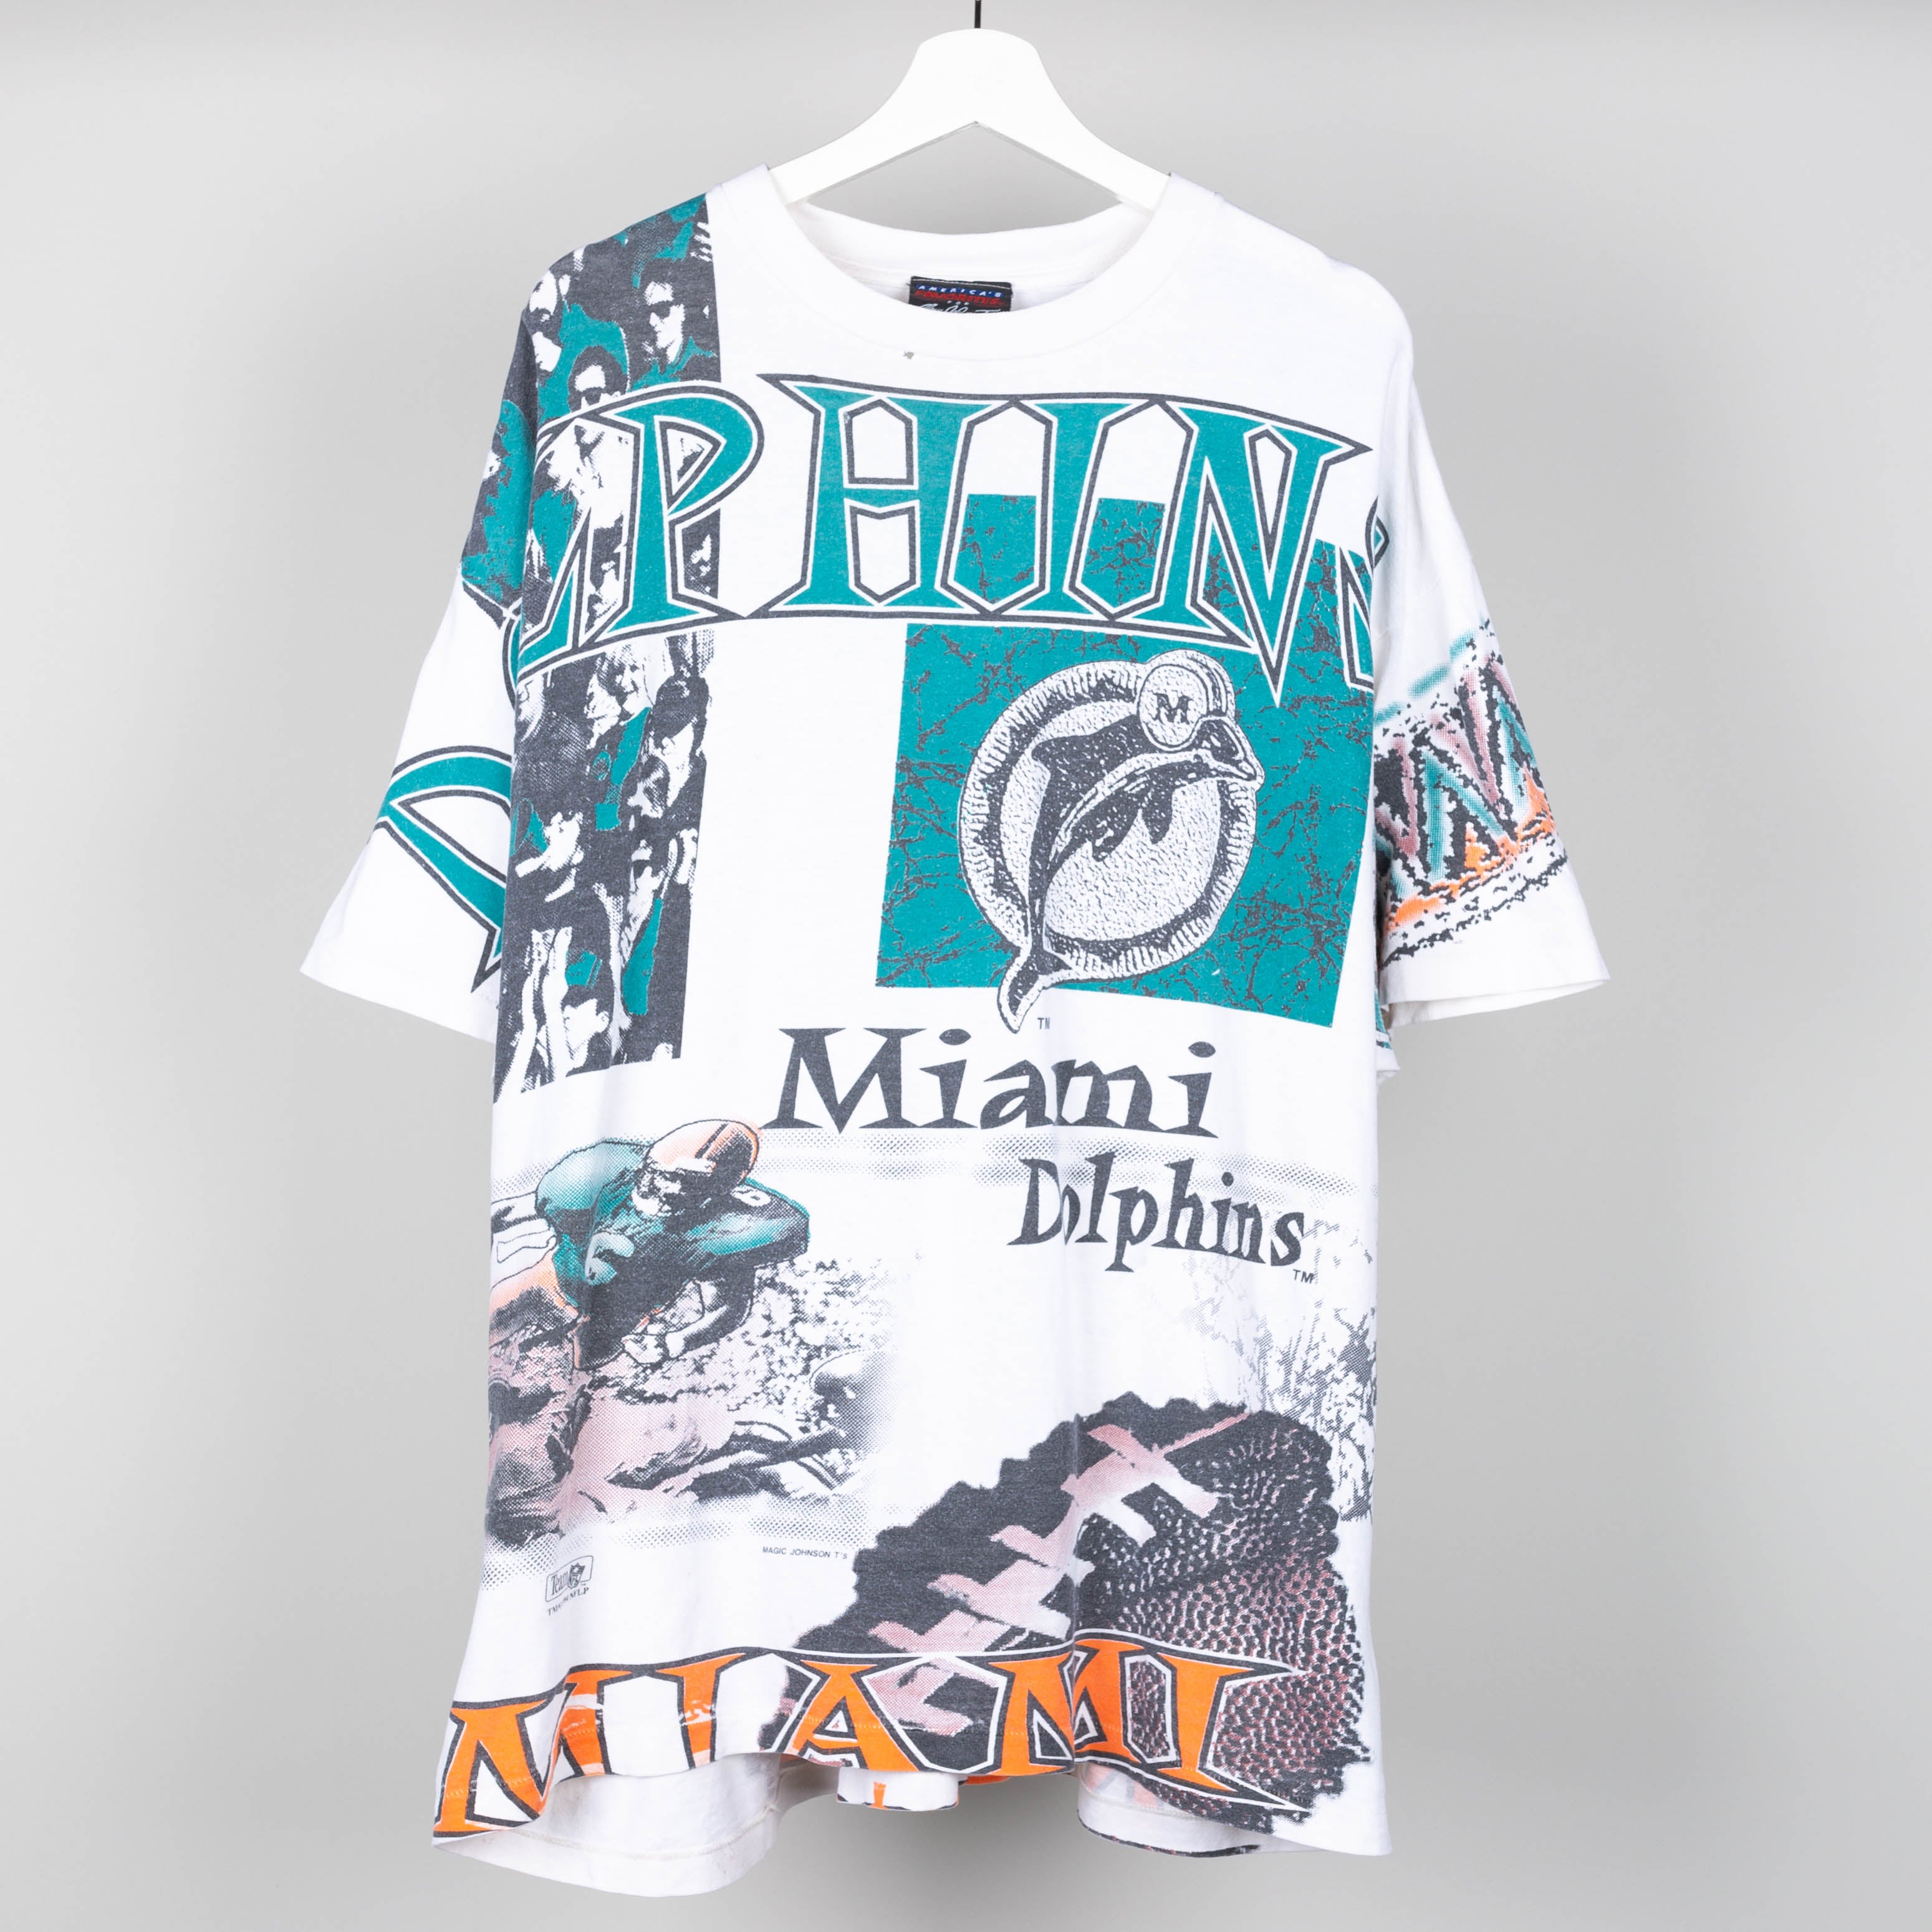 1994 Miami Dolphins T-Shirt Size XXL